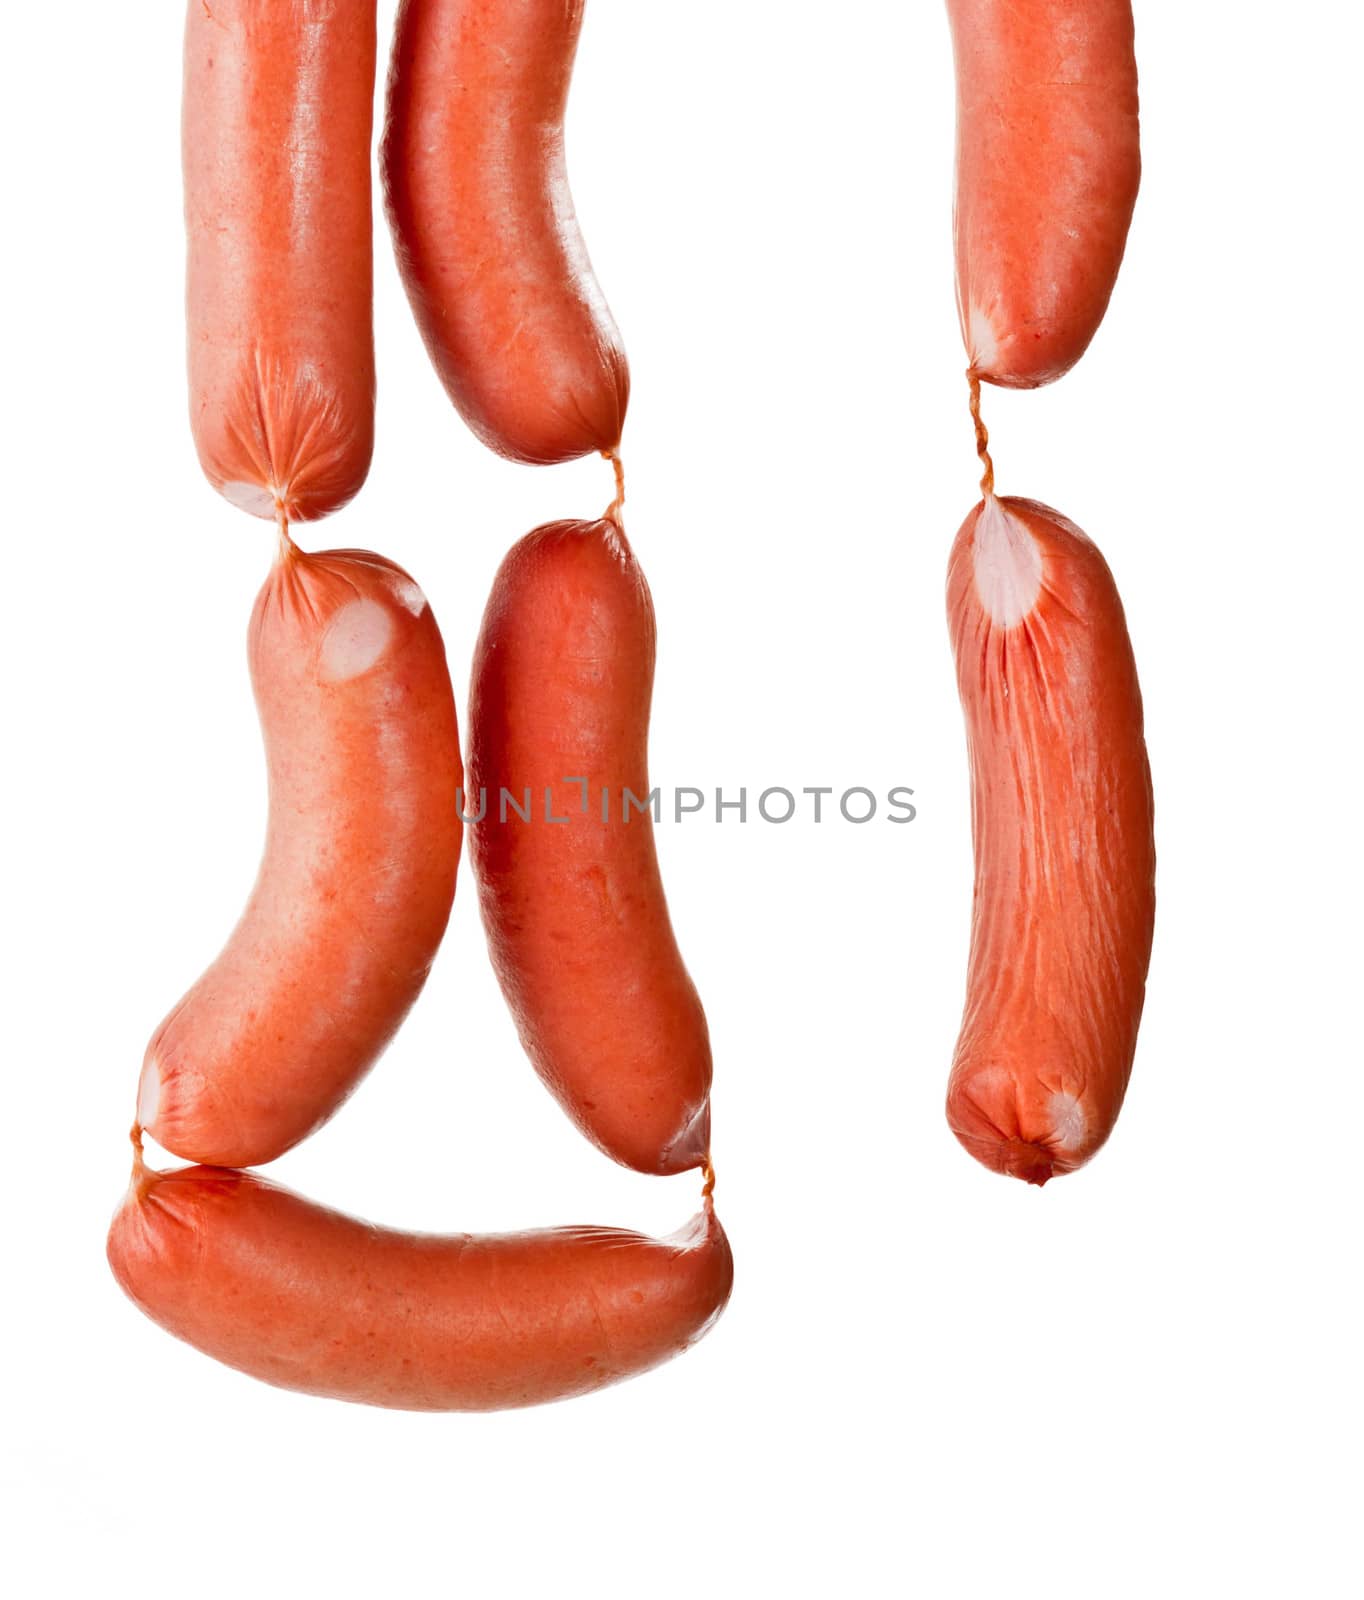 hang sausages by shutswis